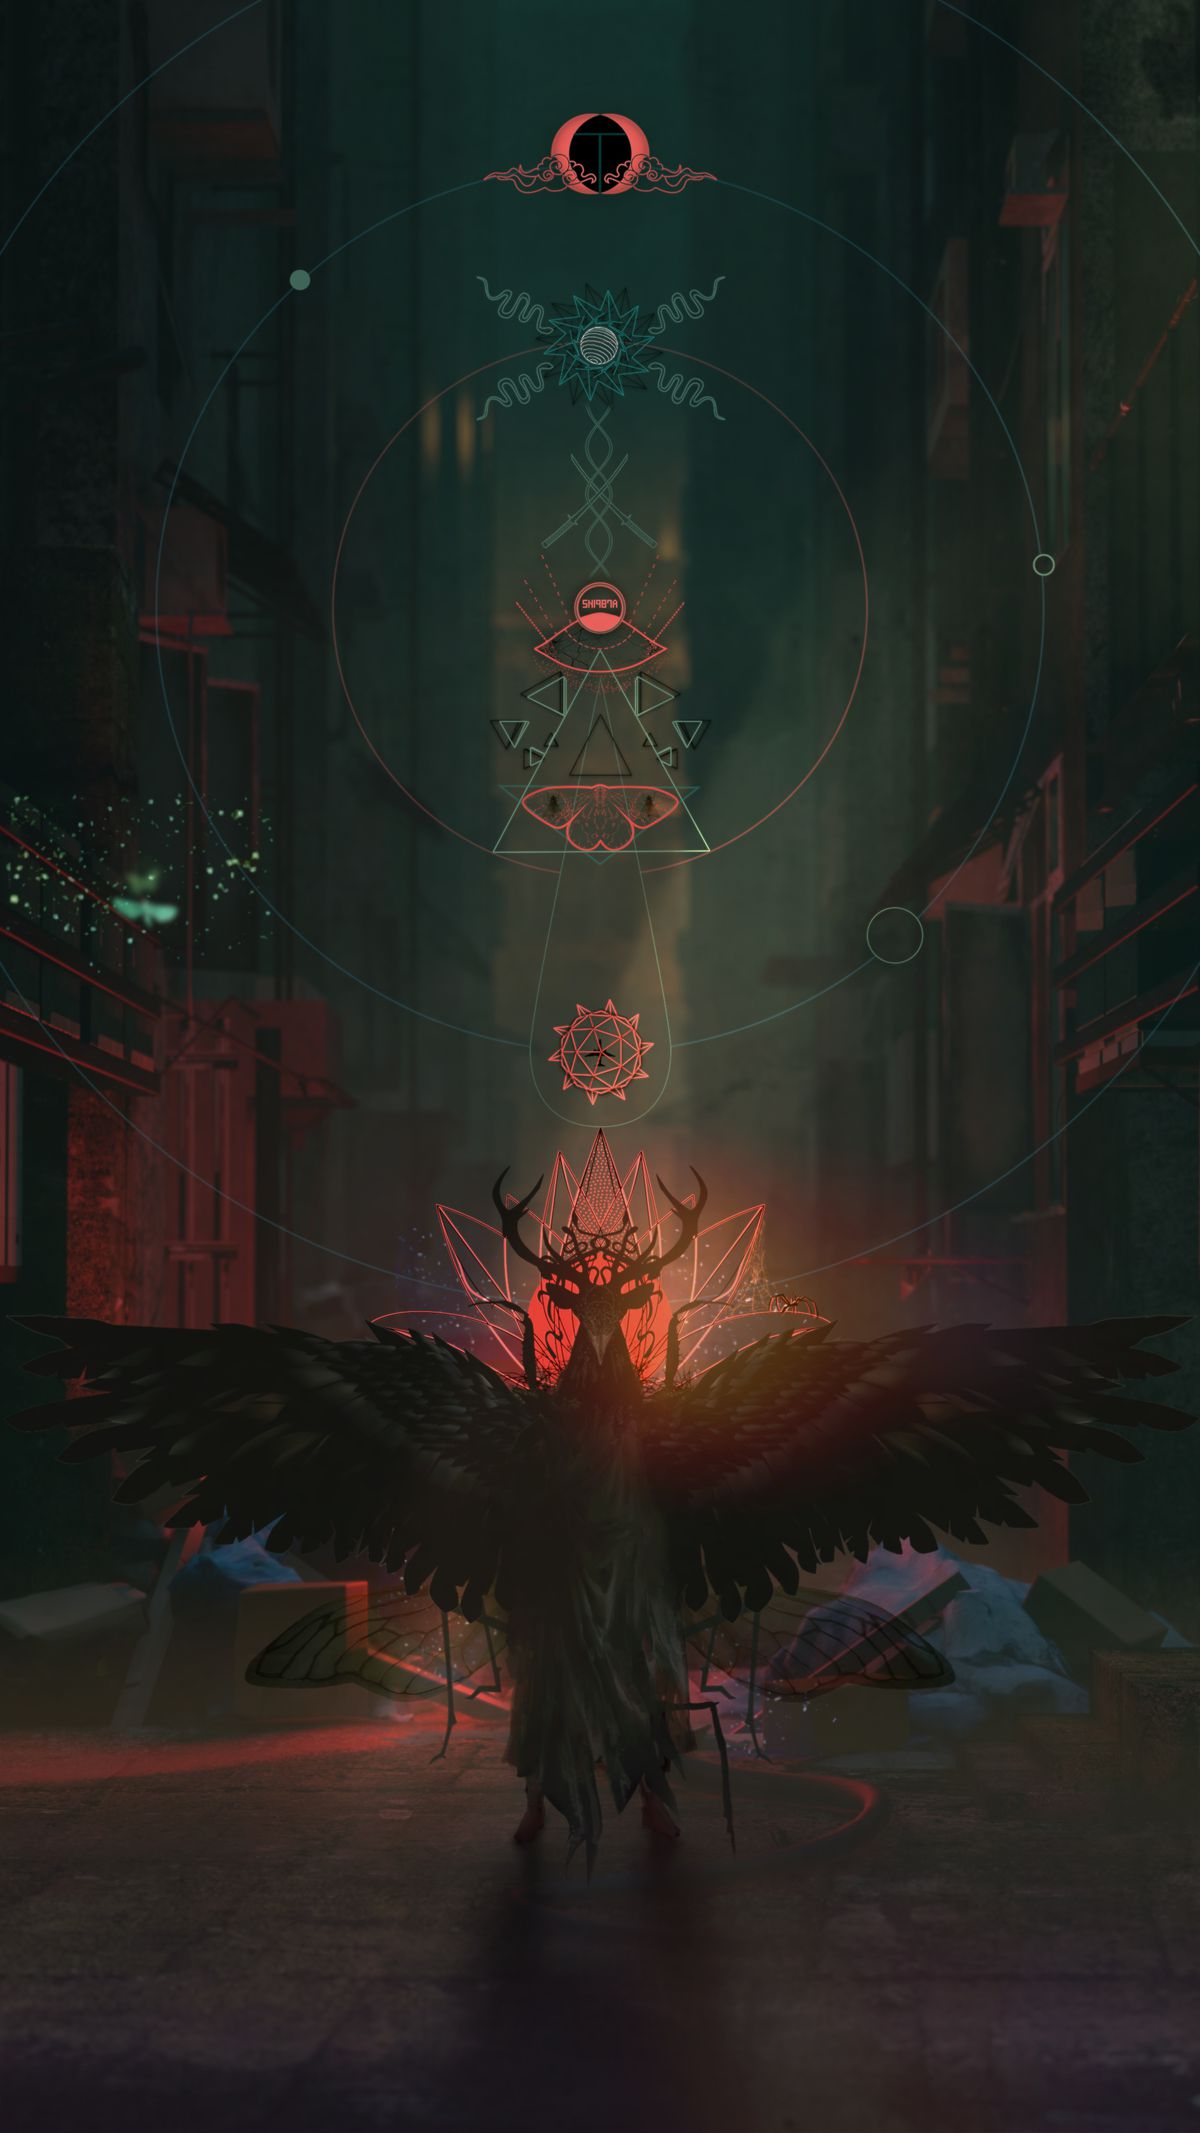 Artwork per un titolo non annunciato da Bokeh Game Studio con simboli occulti e un personaggio con le corna